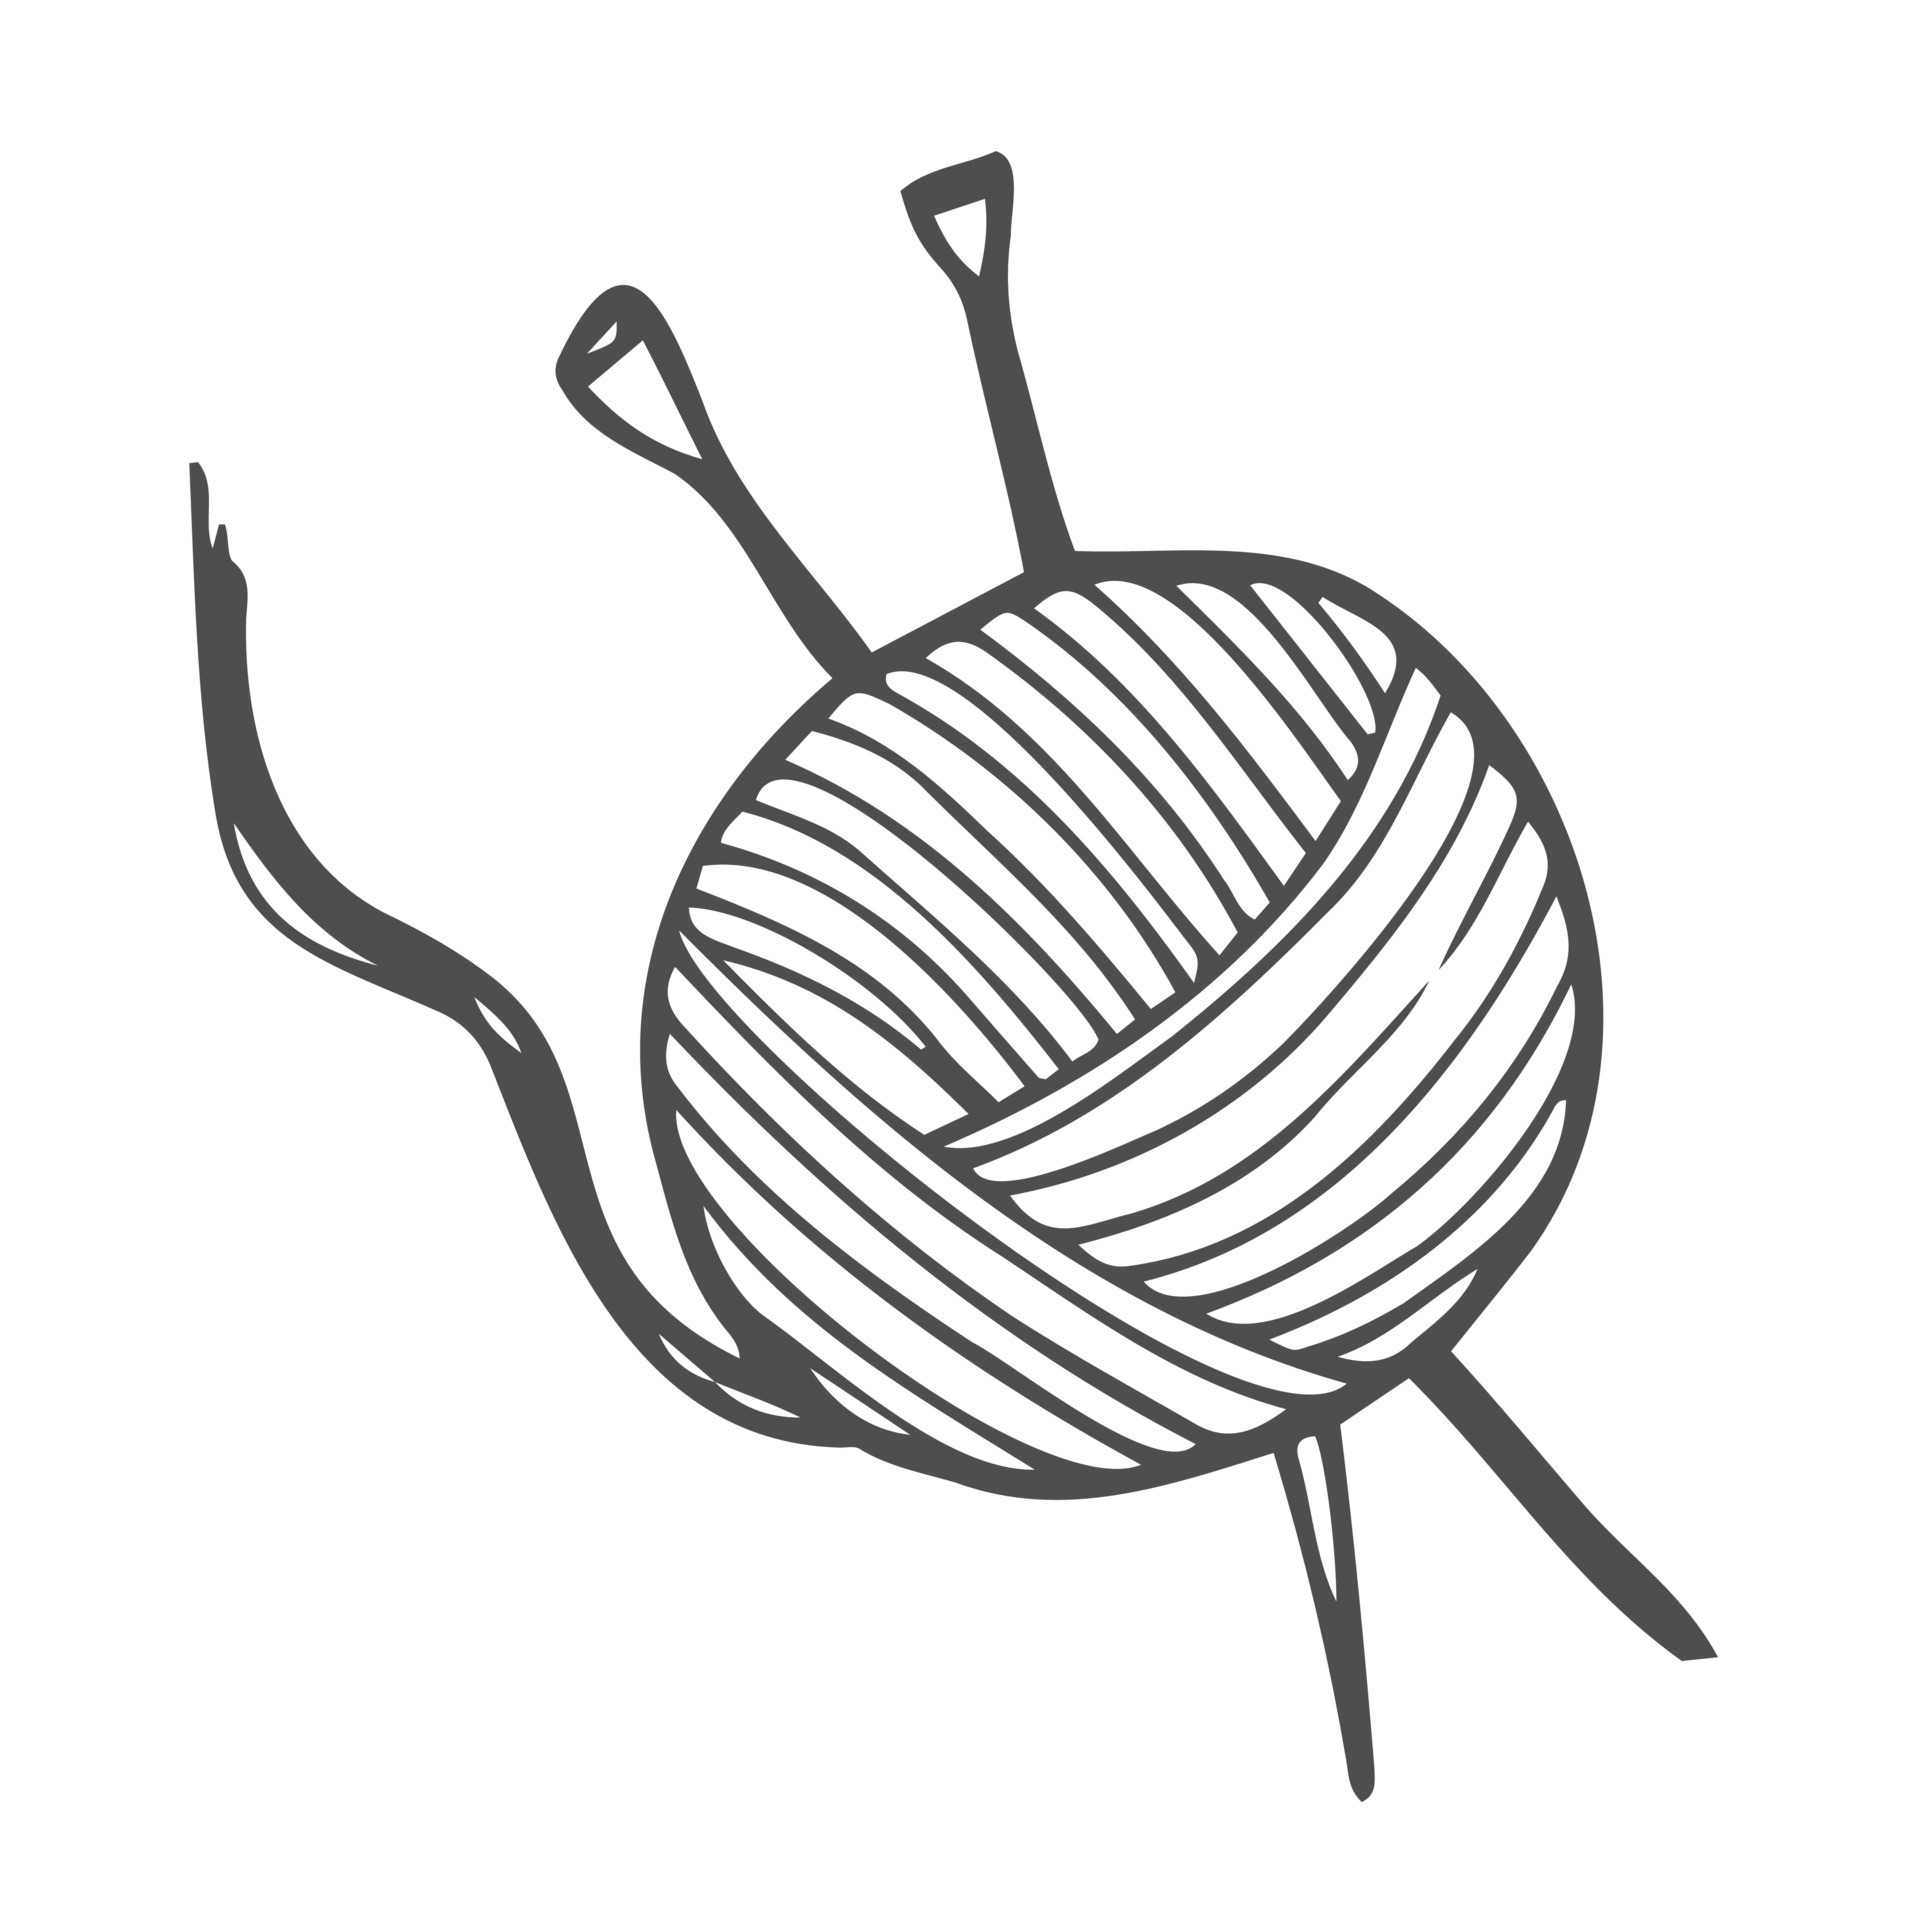 Ball of yarn for knitting. Vector illustration sketch 18997592 Vector ...